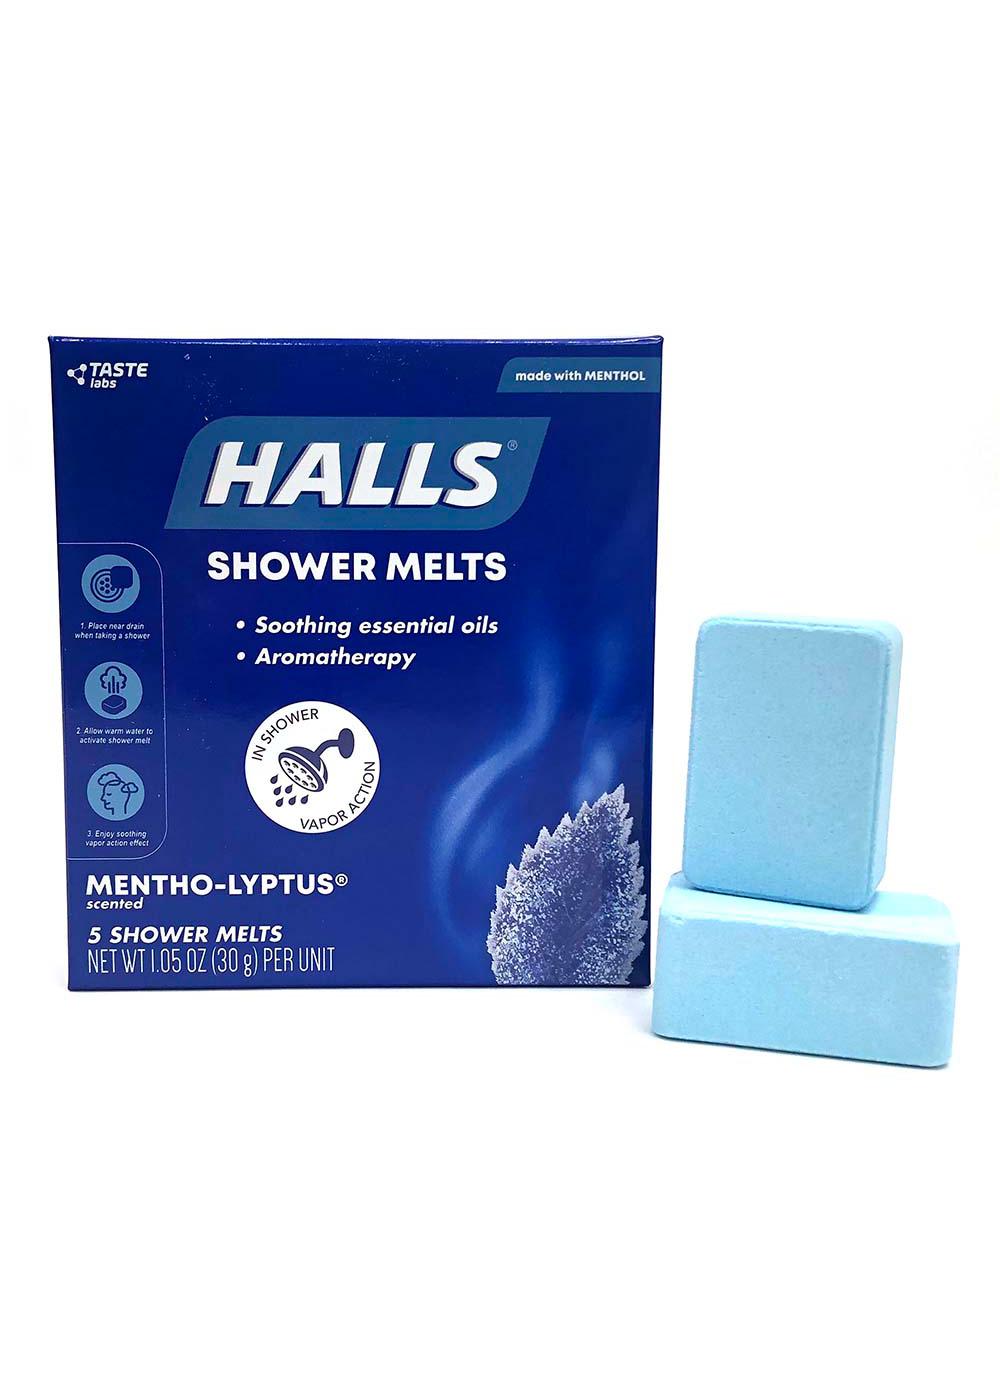 Halls  Shower Melts Mentho-lyptus; image 2 of 2